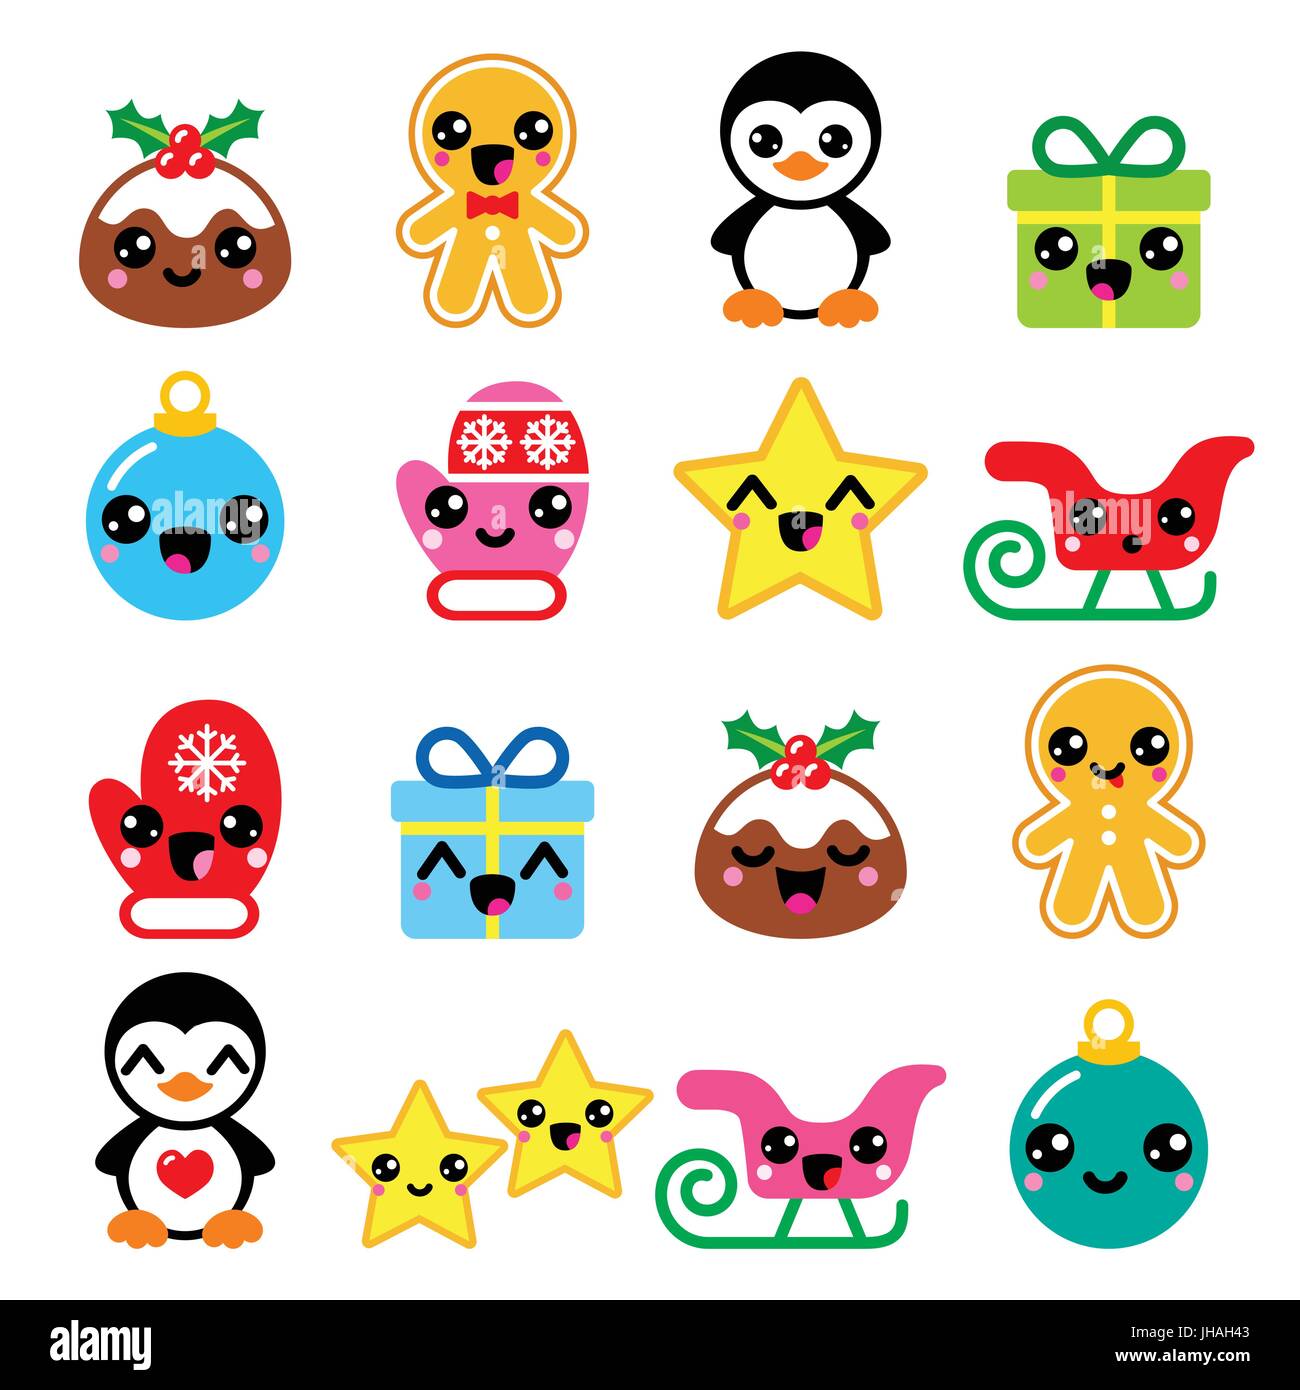 Immagini Natalizie Kawaii.Christmas Kawaii Icons Christmas Pudding Penguin Gingerbread Man Stock Vector Image Art Alamy